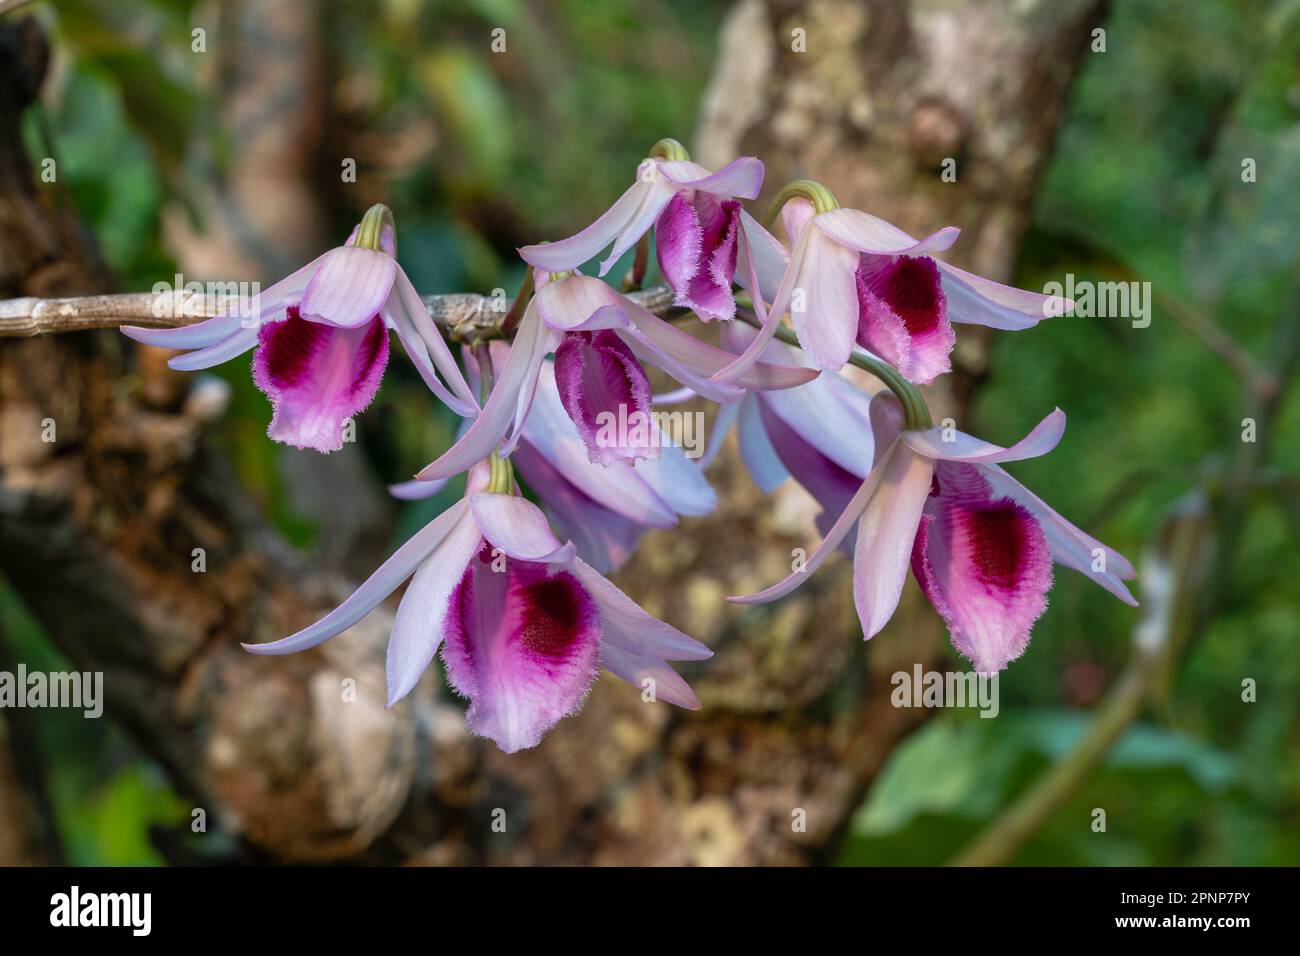 Gros plan sur les fleurs roses et violettes colorées de l'espèce épiphytique d'orchidée tropicale dendrobium anosmum qui fleurit à l'extérieur sur fond naturel Banque D'Images